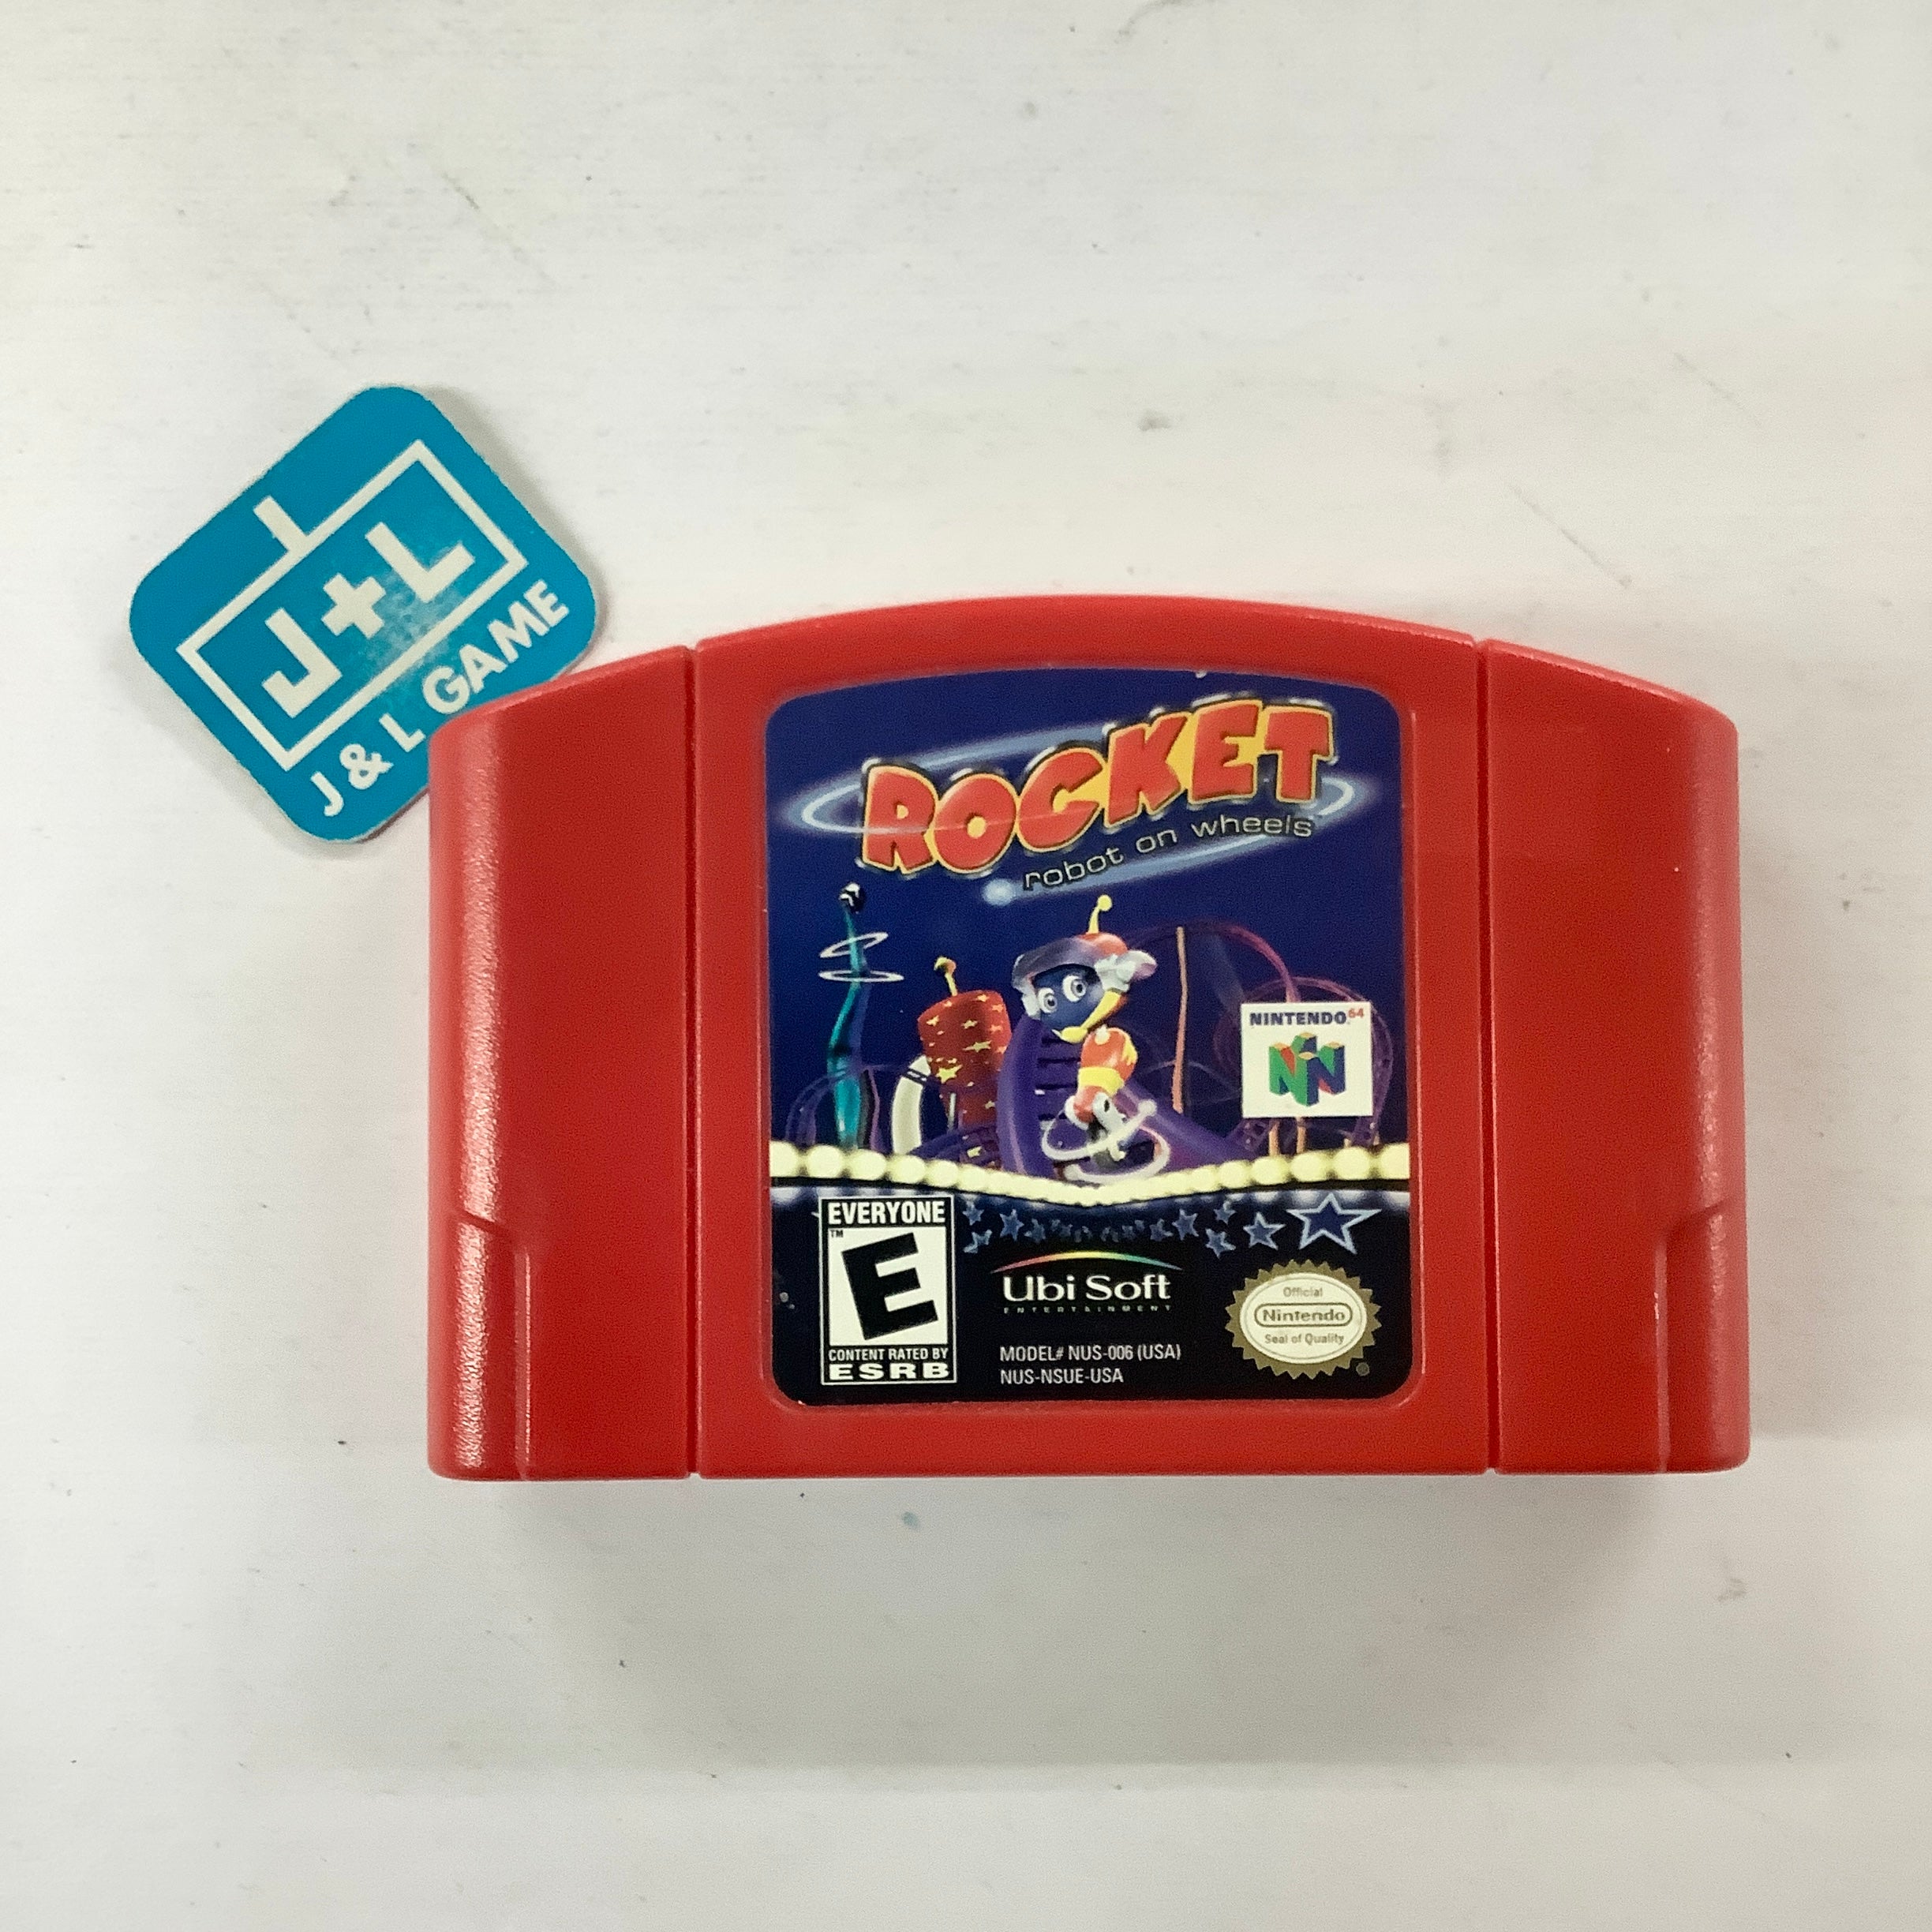 Rocket: Robot on Wheels - (N64) Nintendo 64 [Pre-Owned]